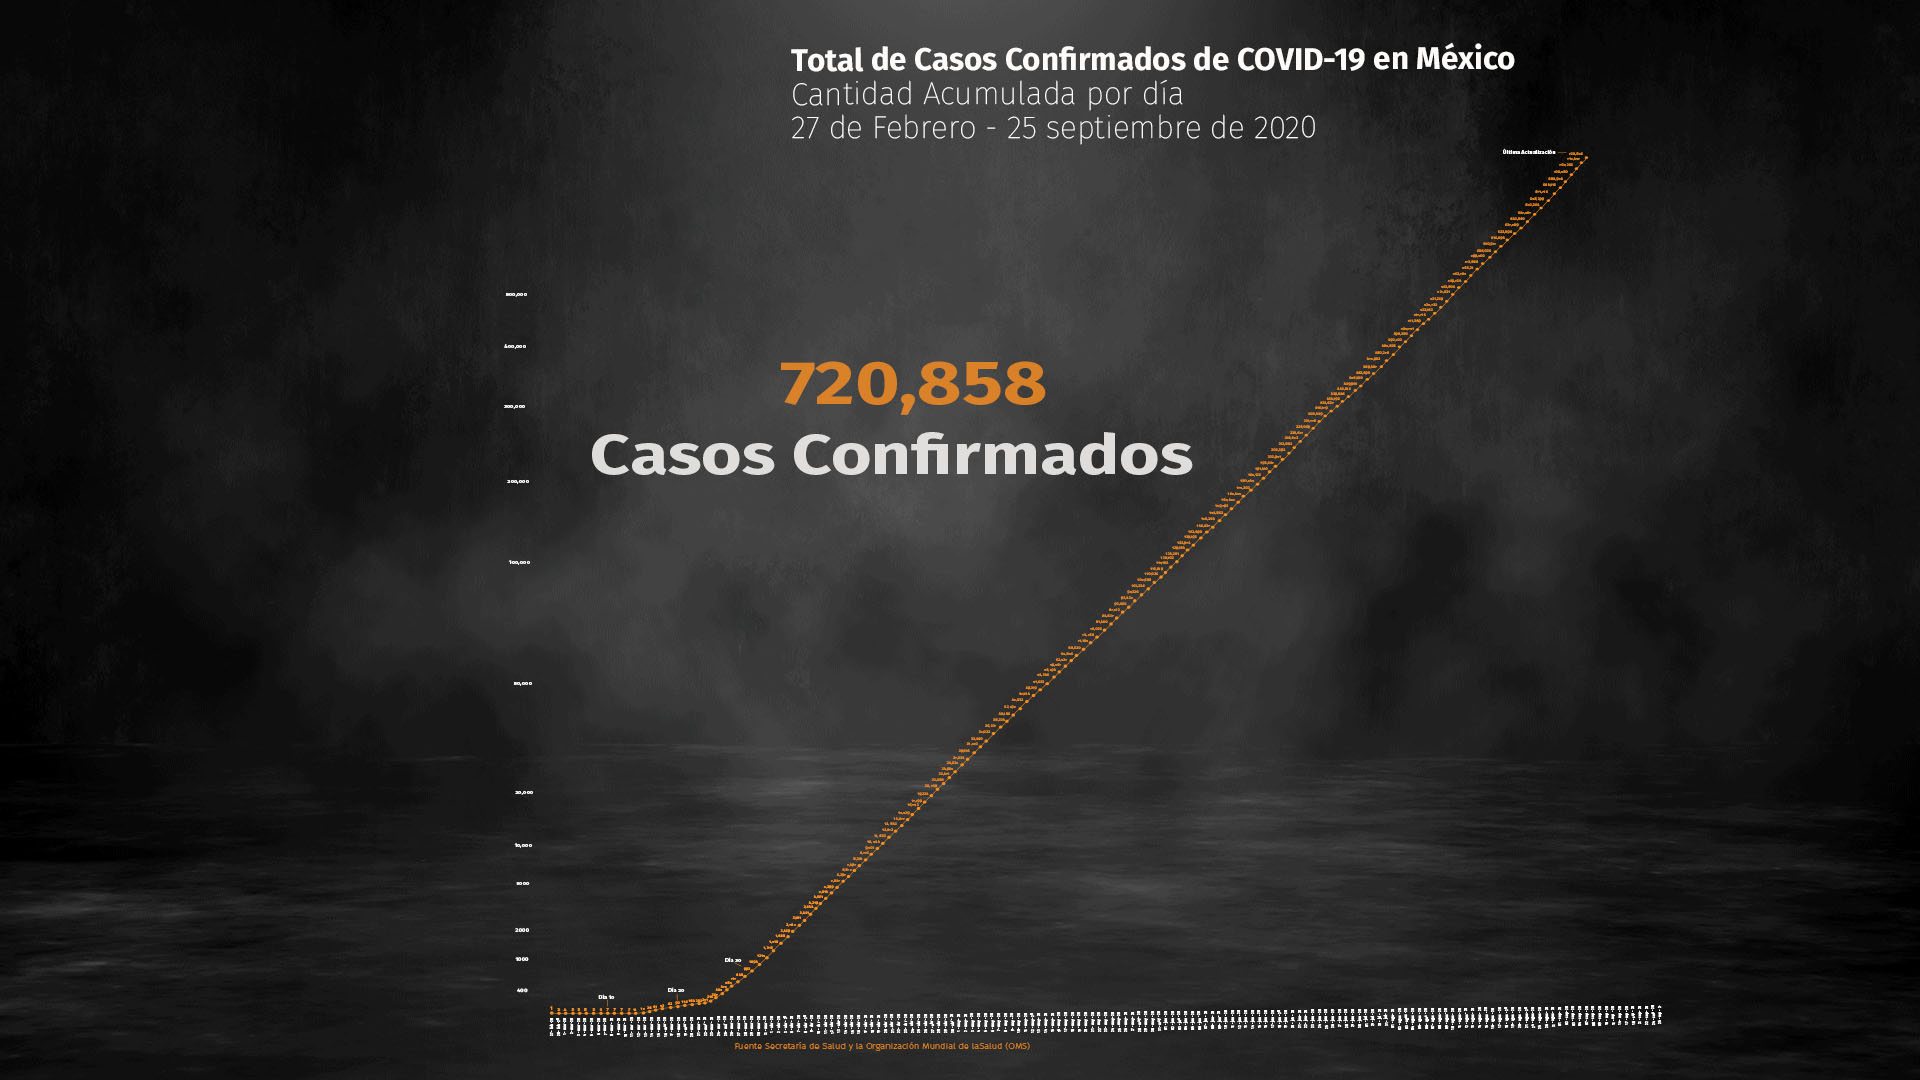 Al corte de este viernes suman 720,858 contagios acumulados (Foto: Ssa)